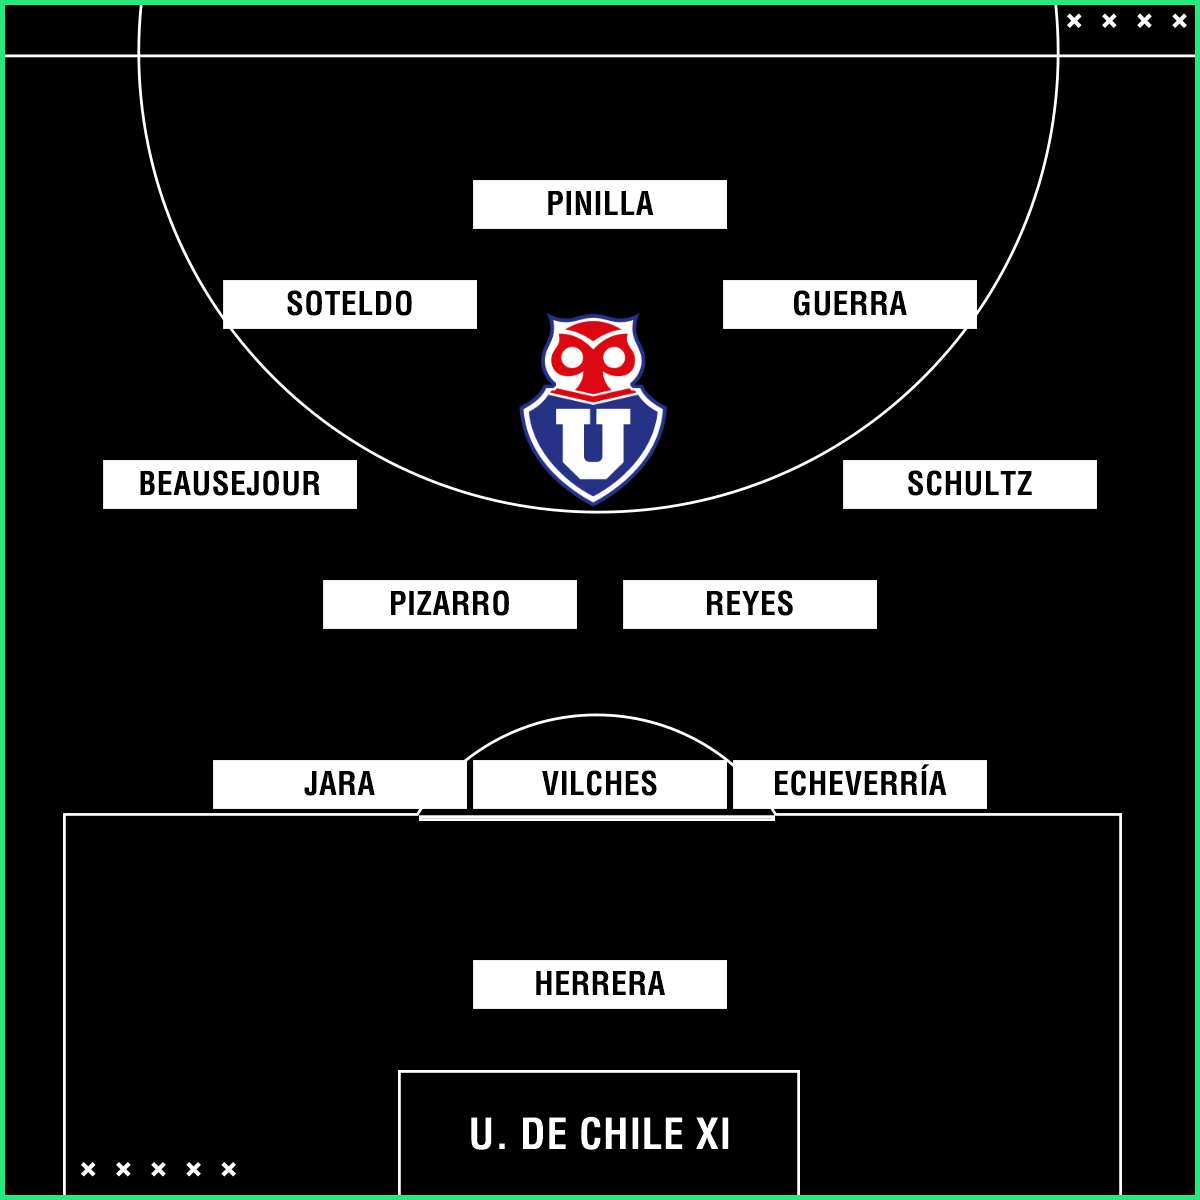 U. de Chile XI